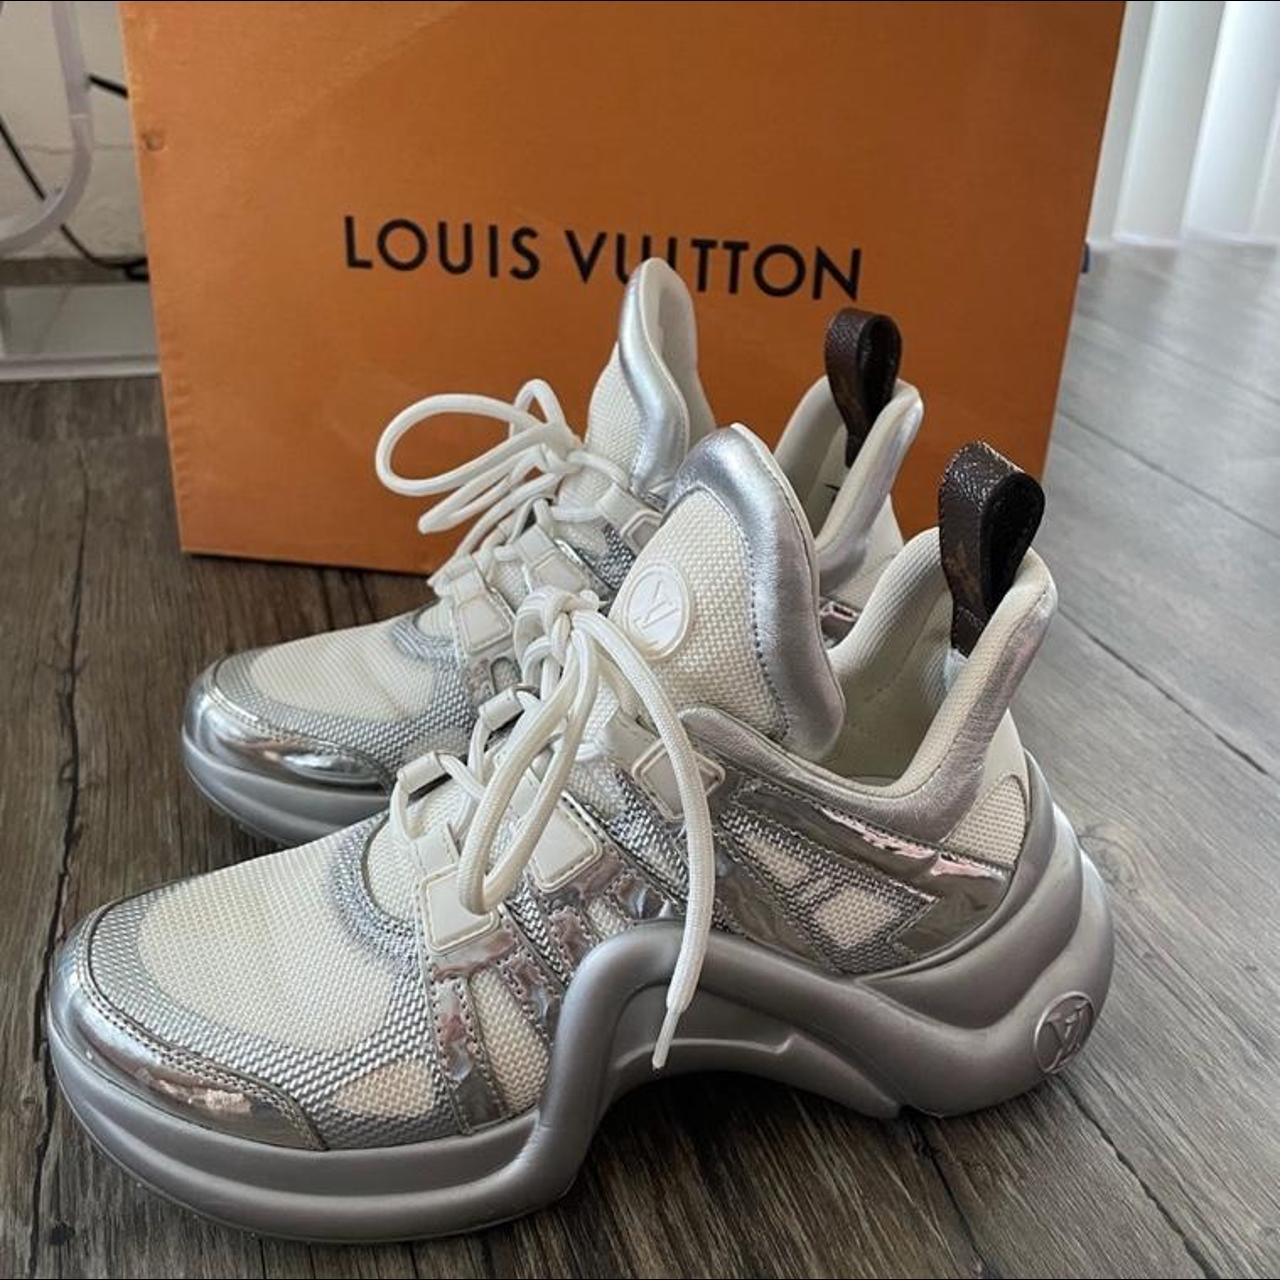 Authentic LV/Shoes LV/Design Shoes Louis Vuitton - Depop